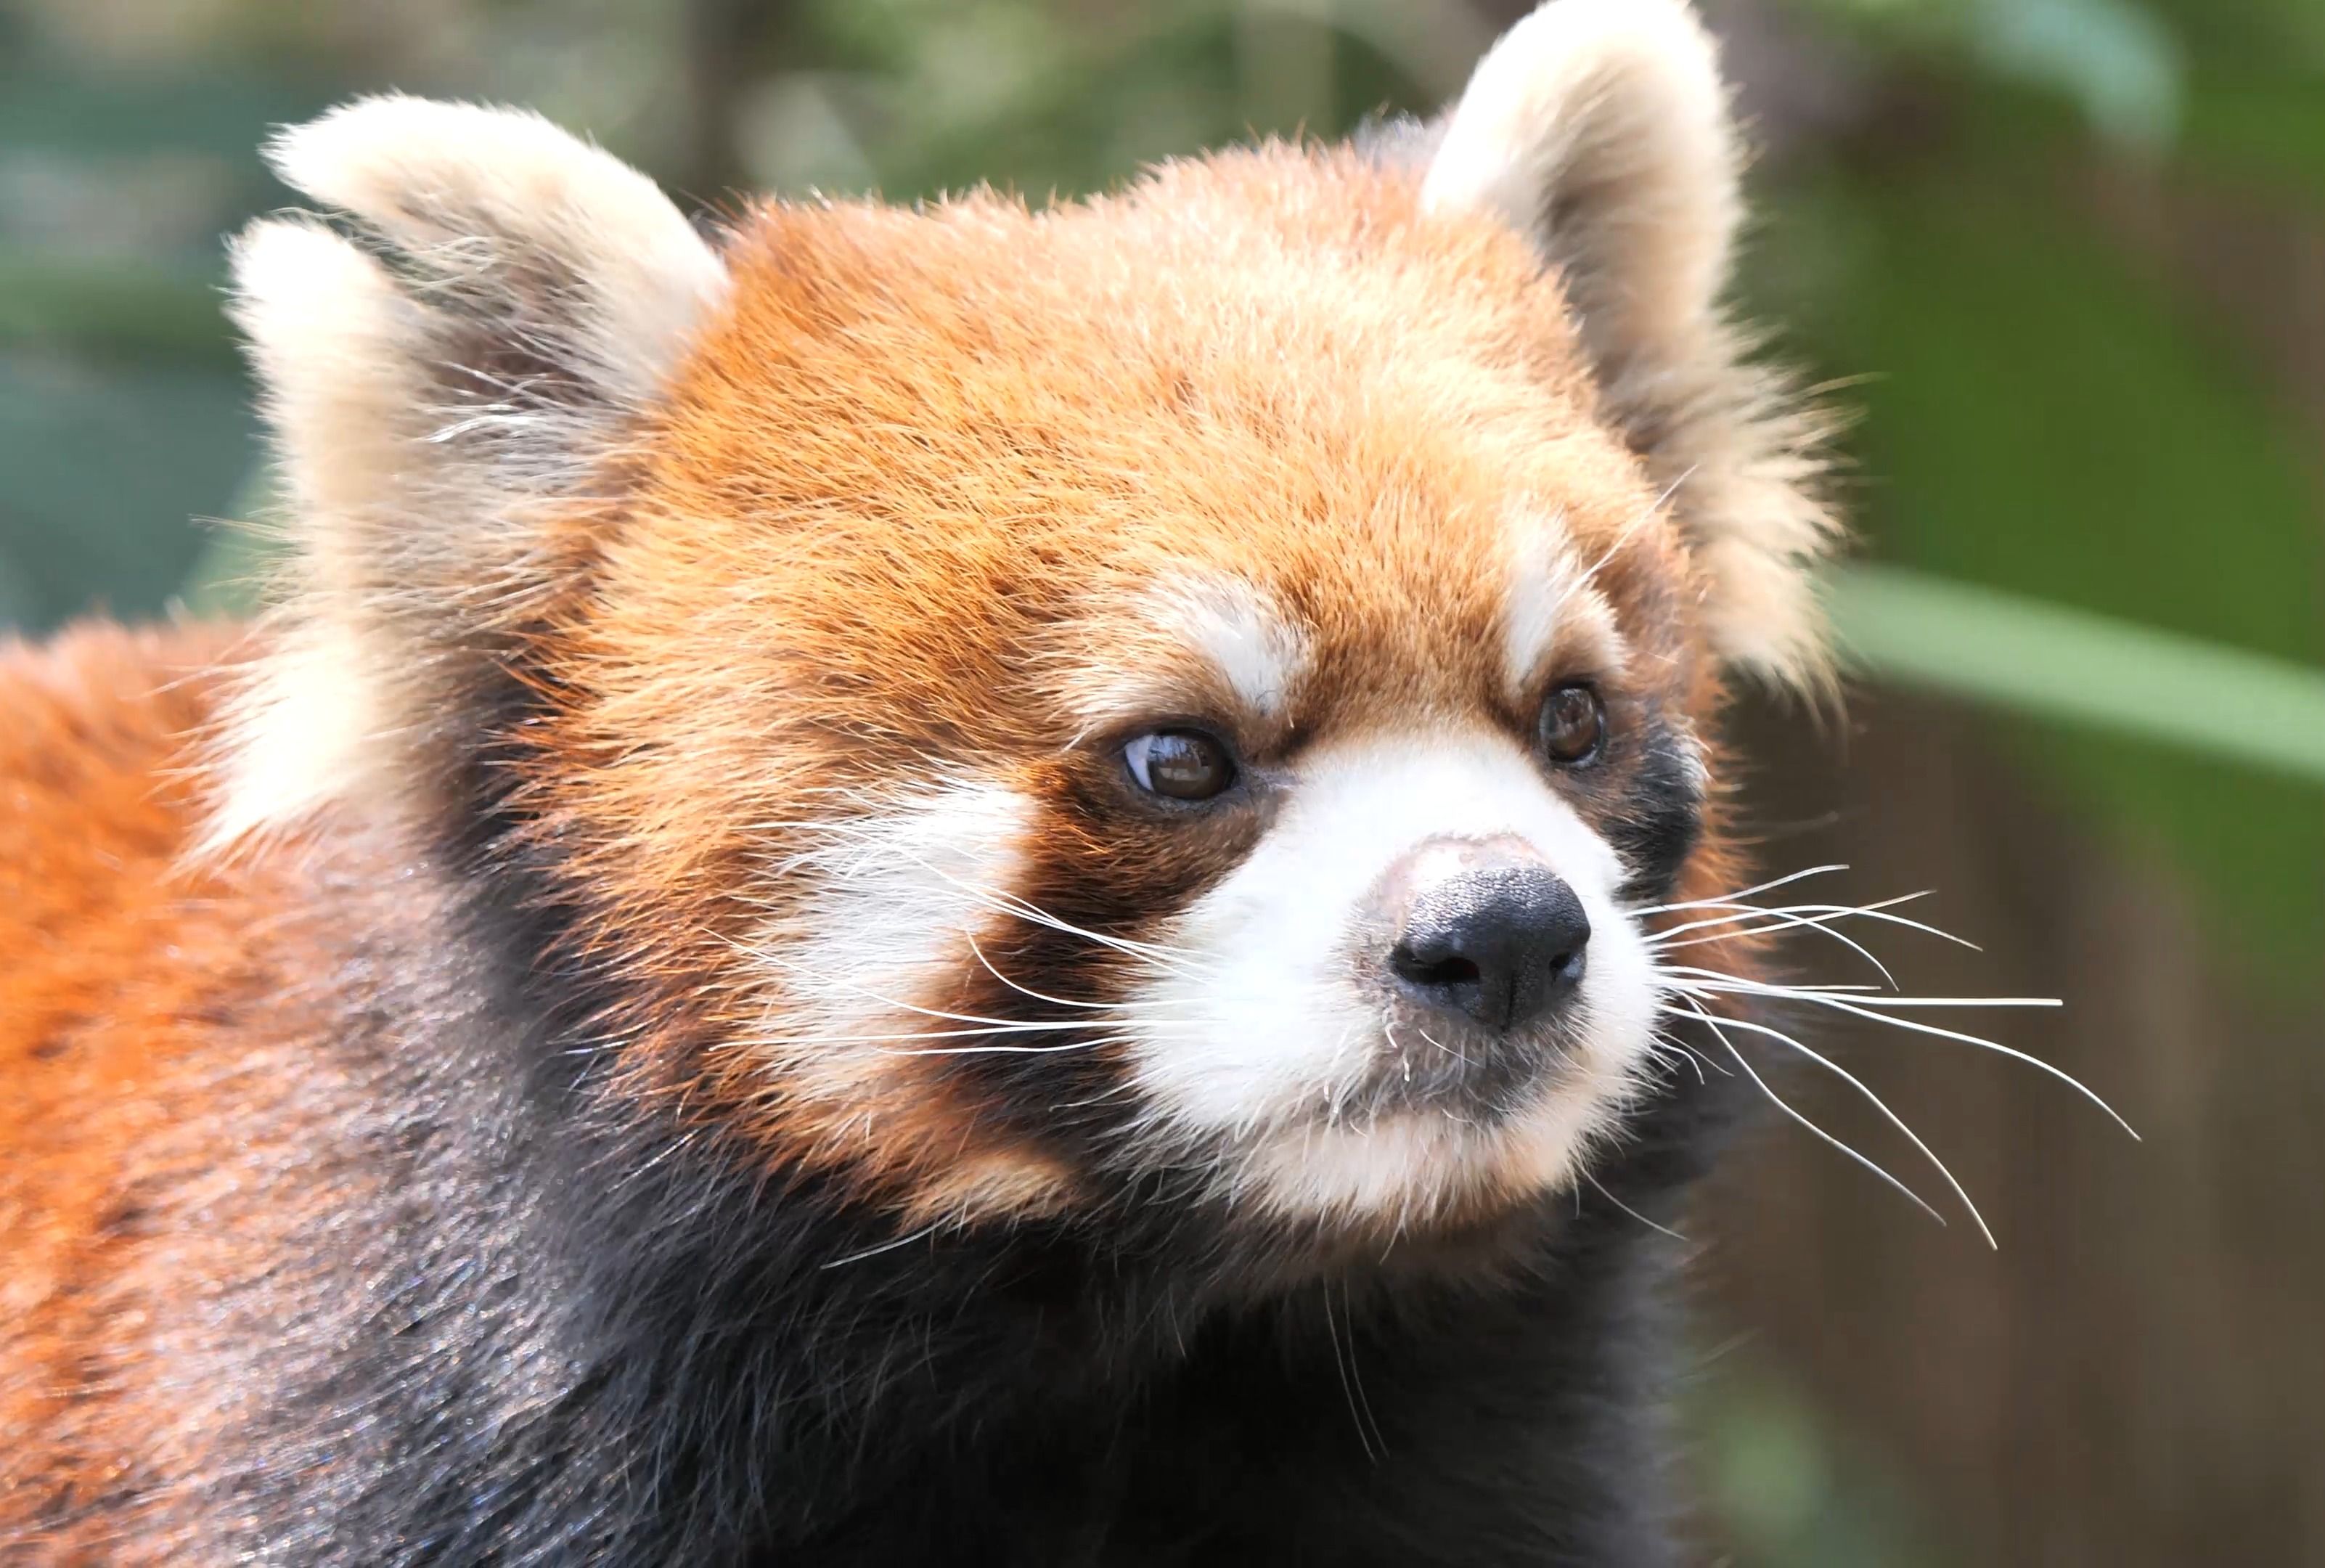 长得很有个性的小家伙【小熊猫】有小伙伴认识吗?杭州动物园